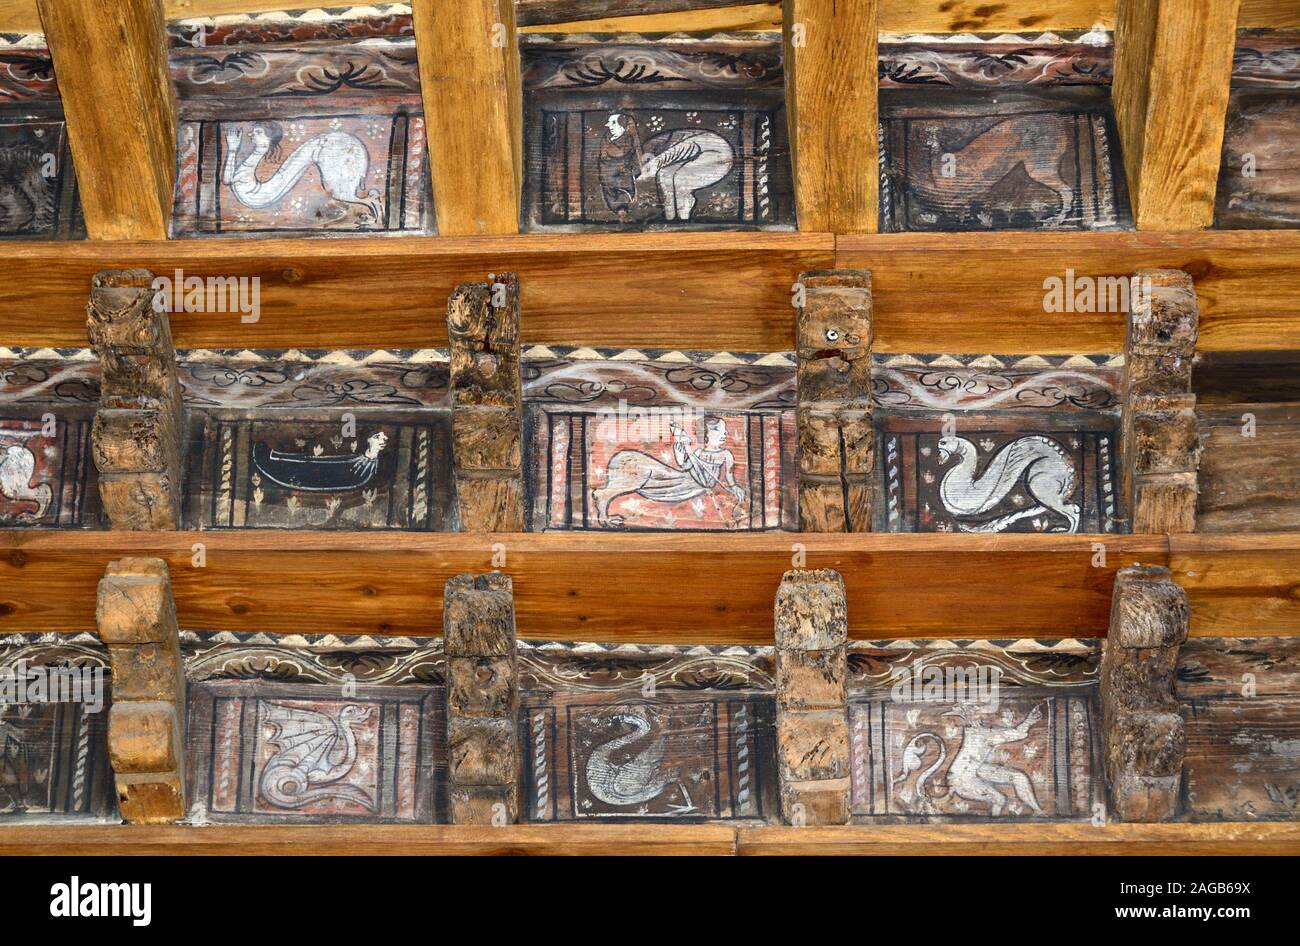 Plafond peint avec bestiaire médiéval Cathédrale de Fréjus Frejus Var Provence France Banque D'Images